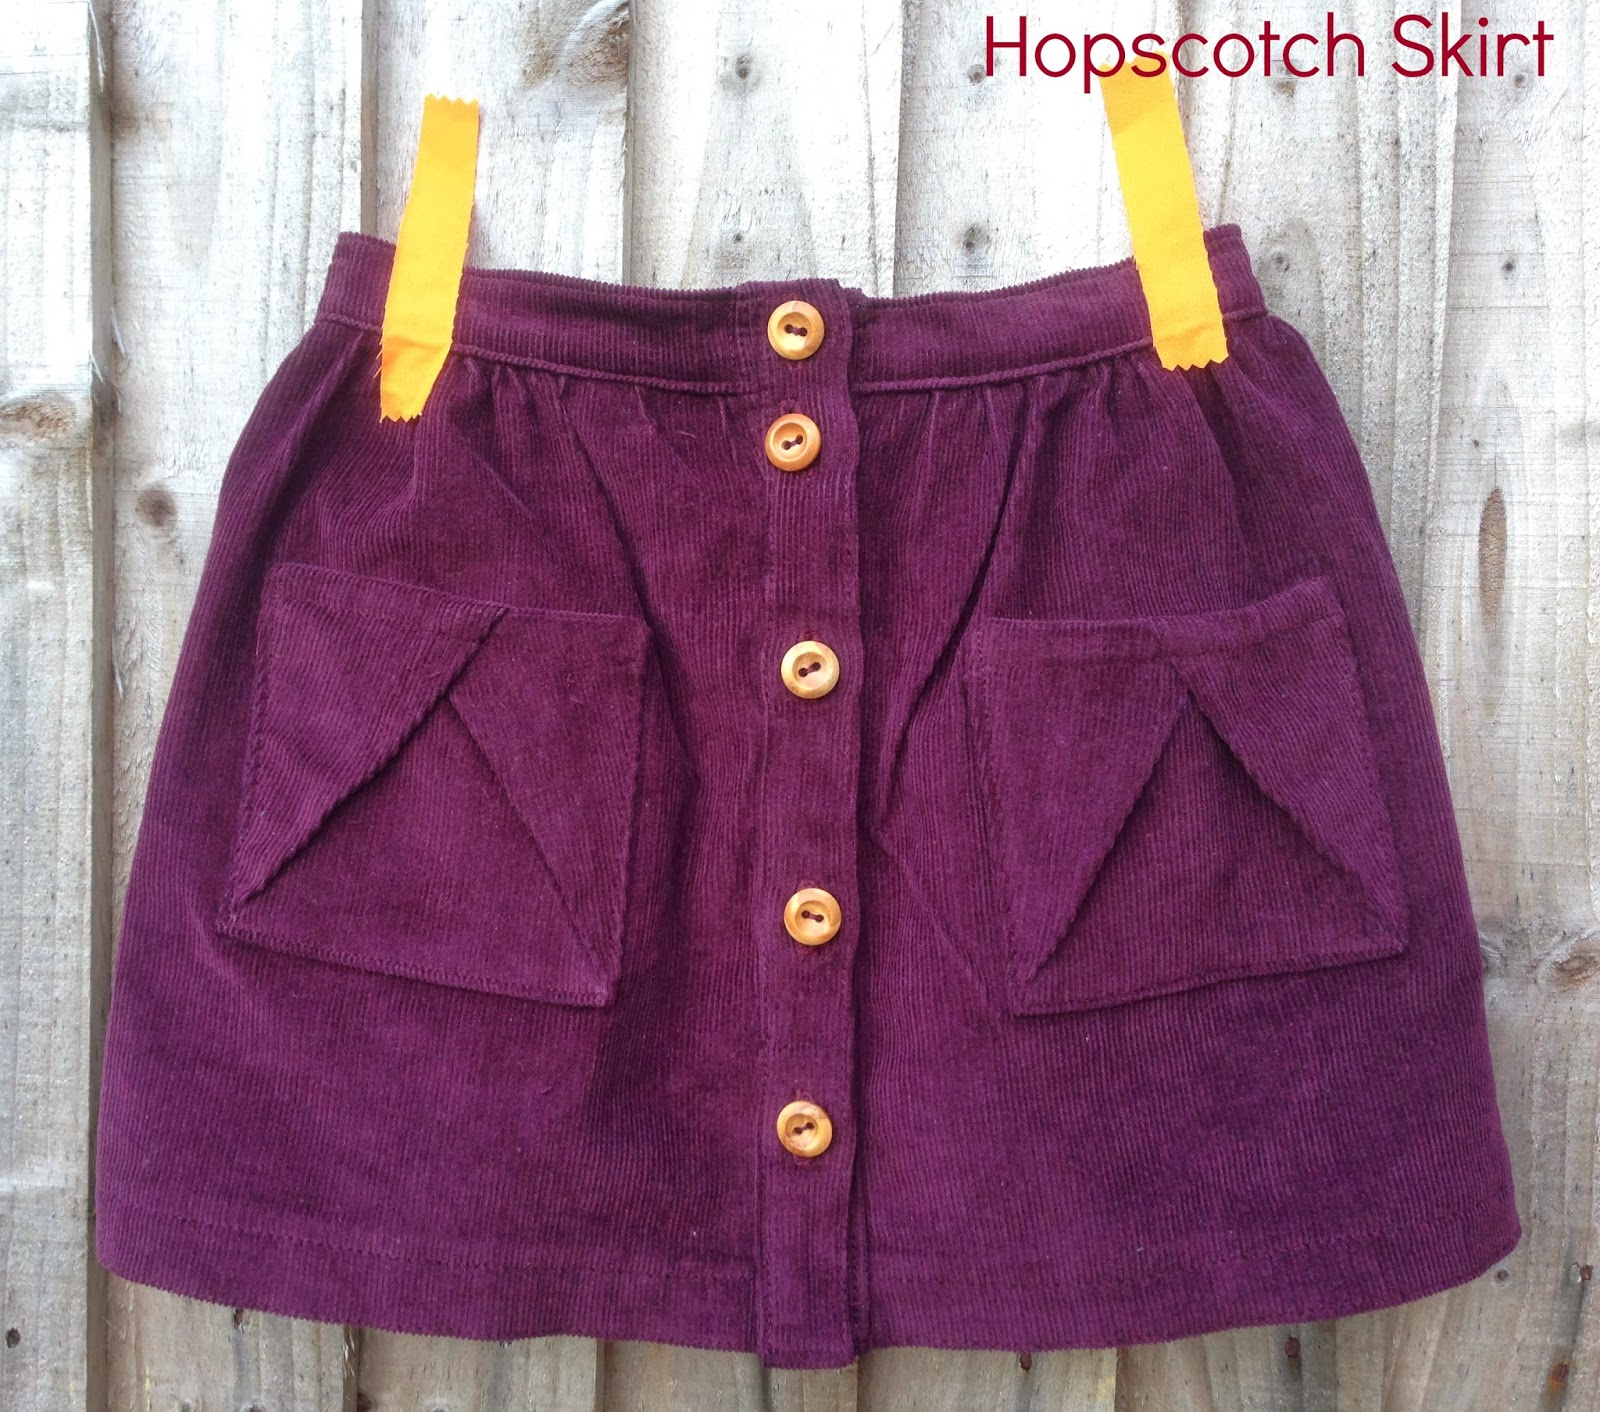 Rose & Dahlia: Hopscotch Skirt!